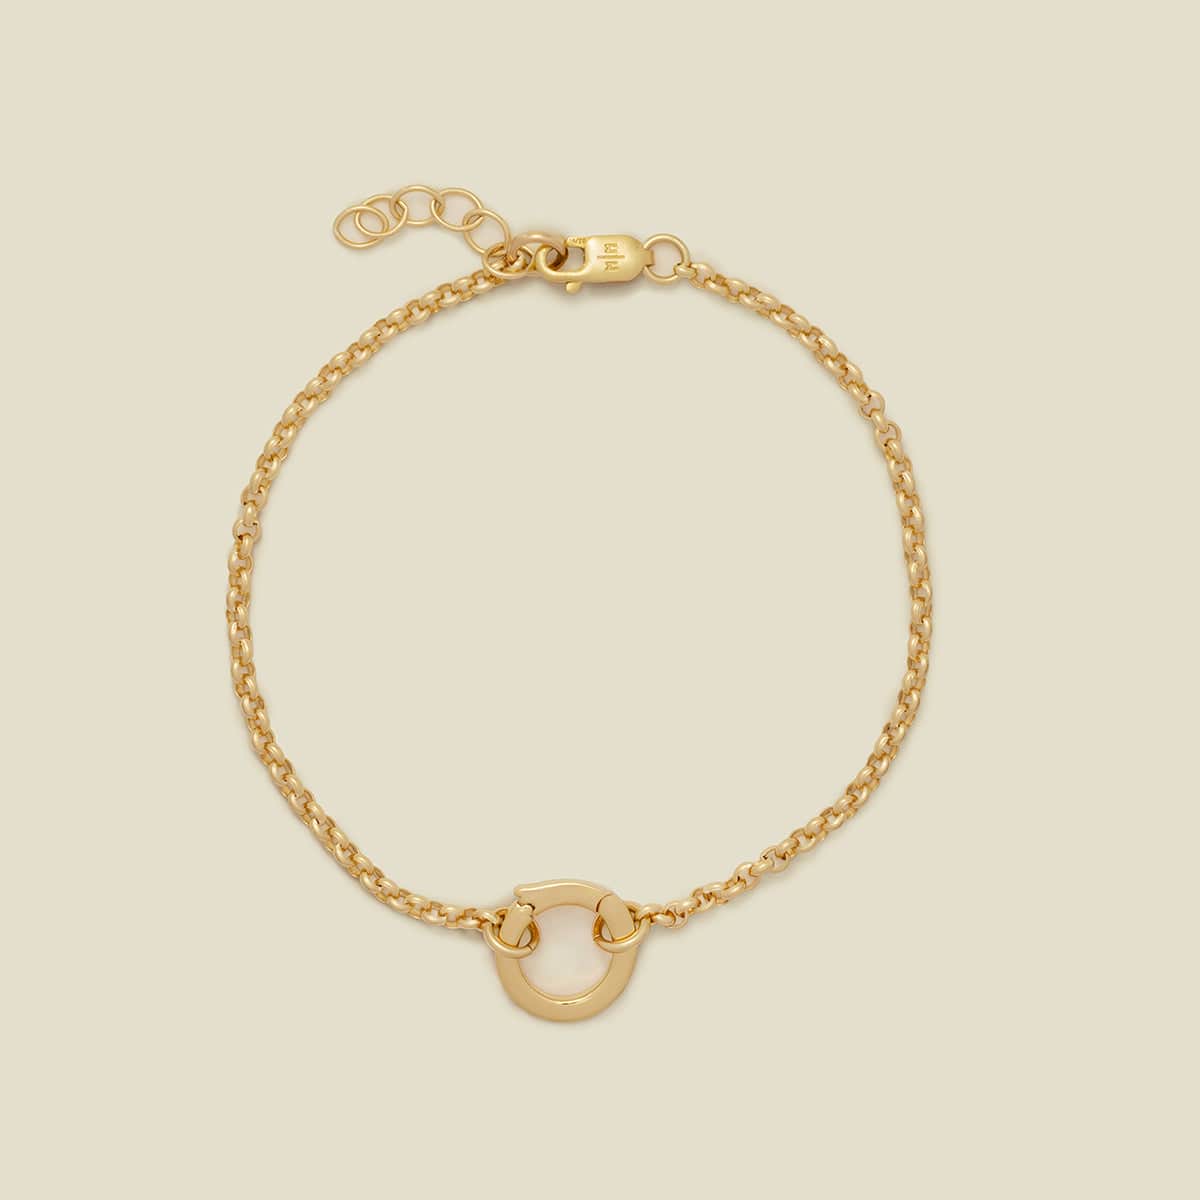 Rolo Charm Bracelet Gold Filled / With Link Lock / 6" Bracelet